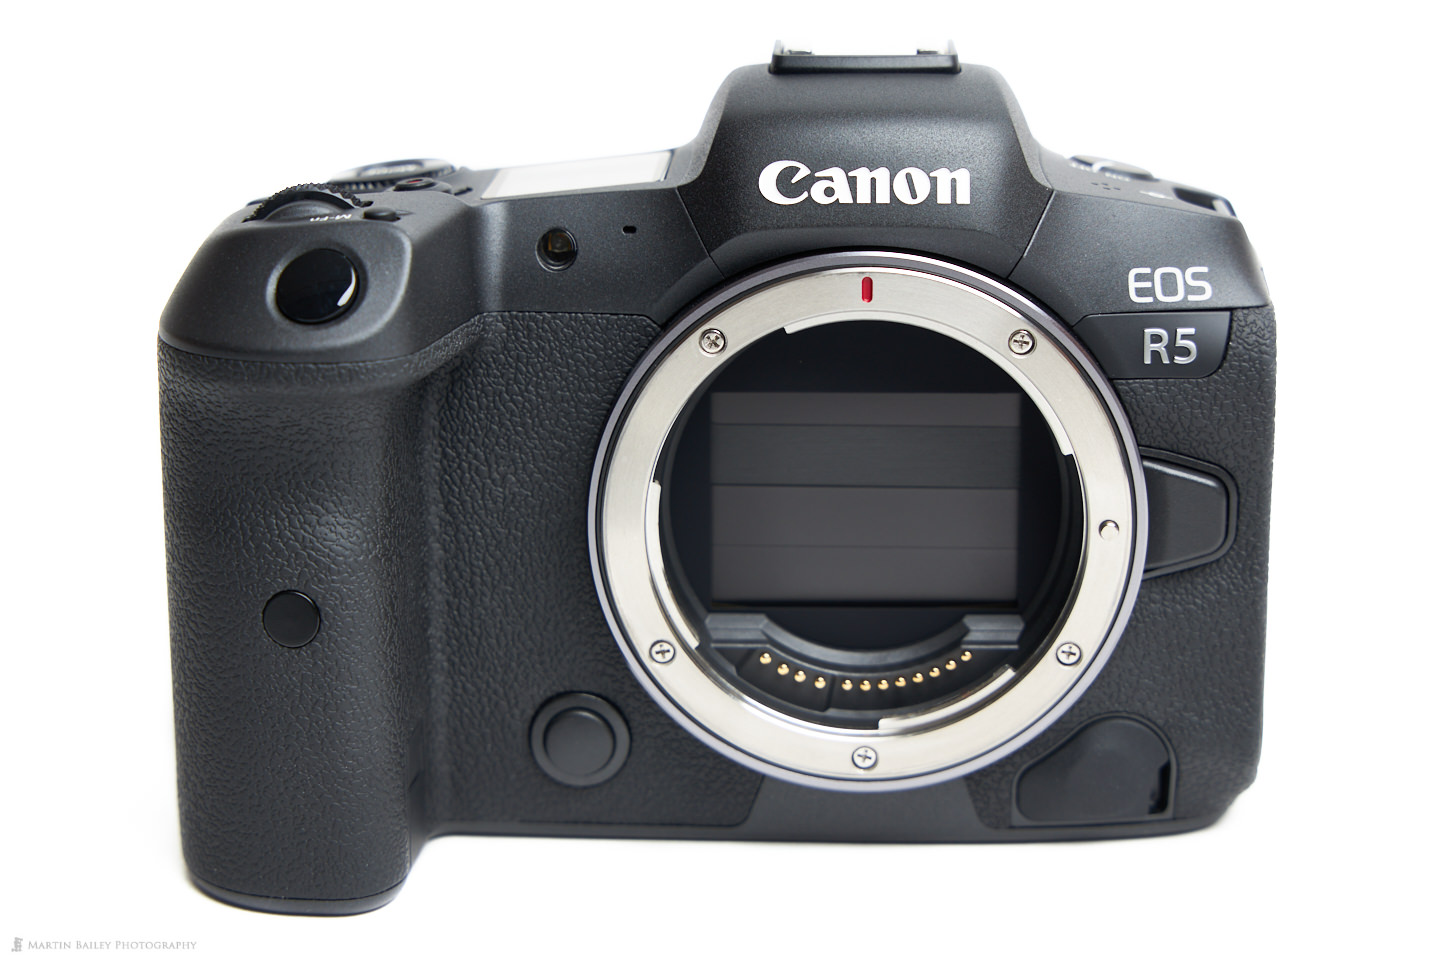 The Canon EOS R5 Body